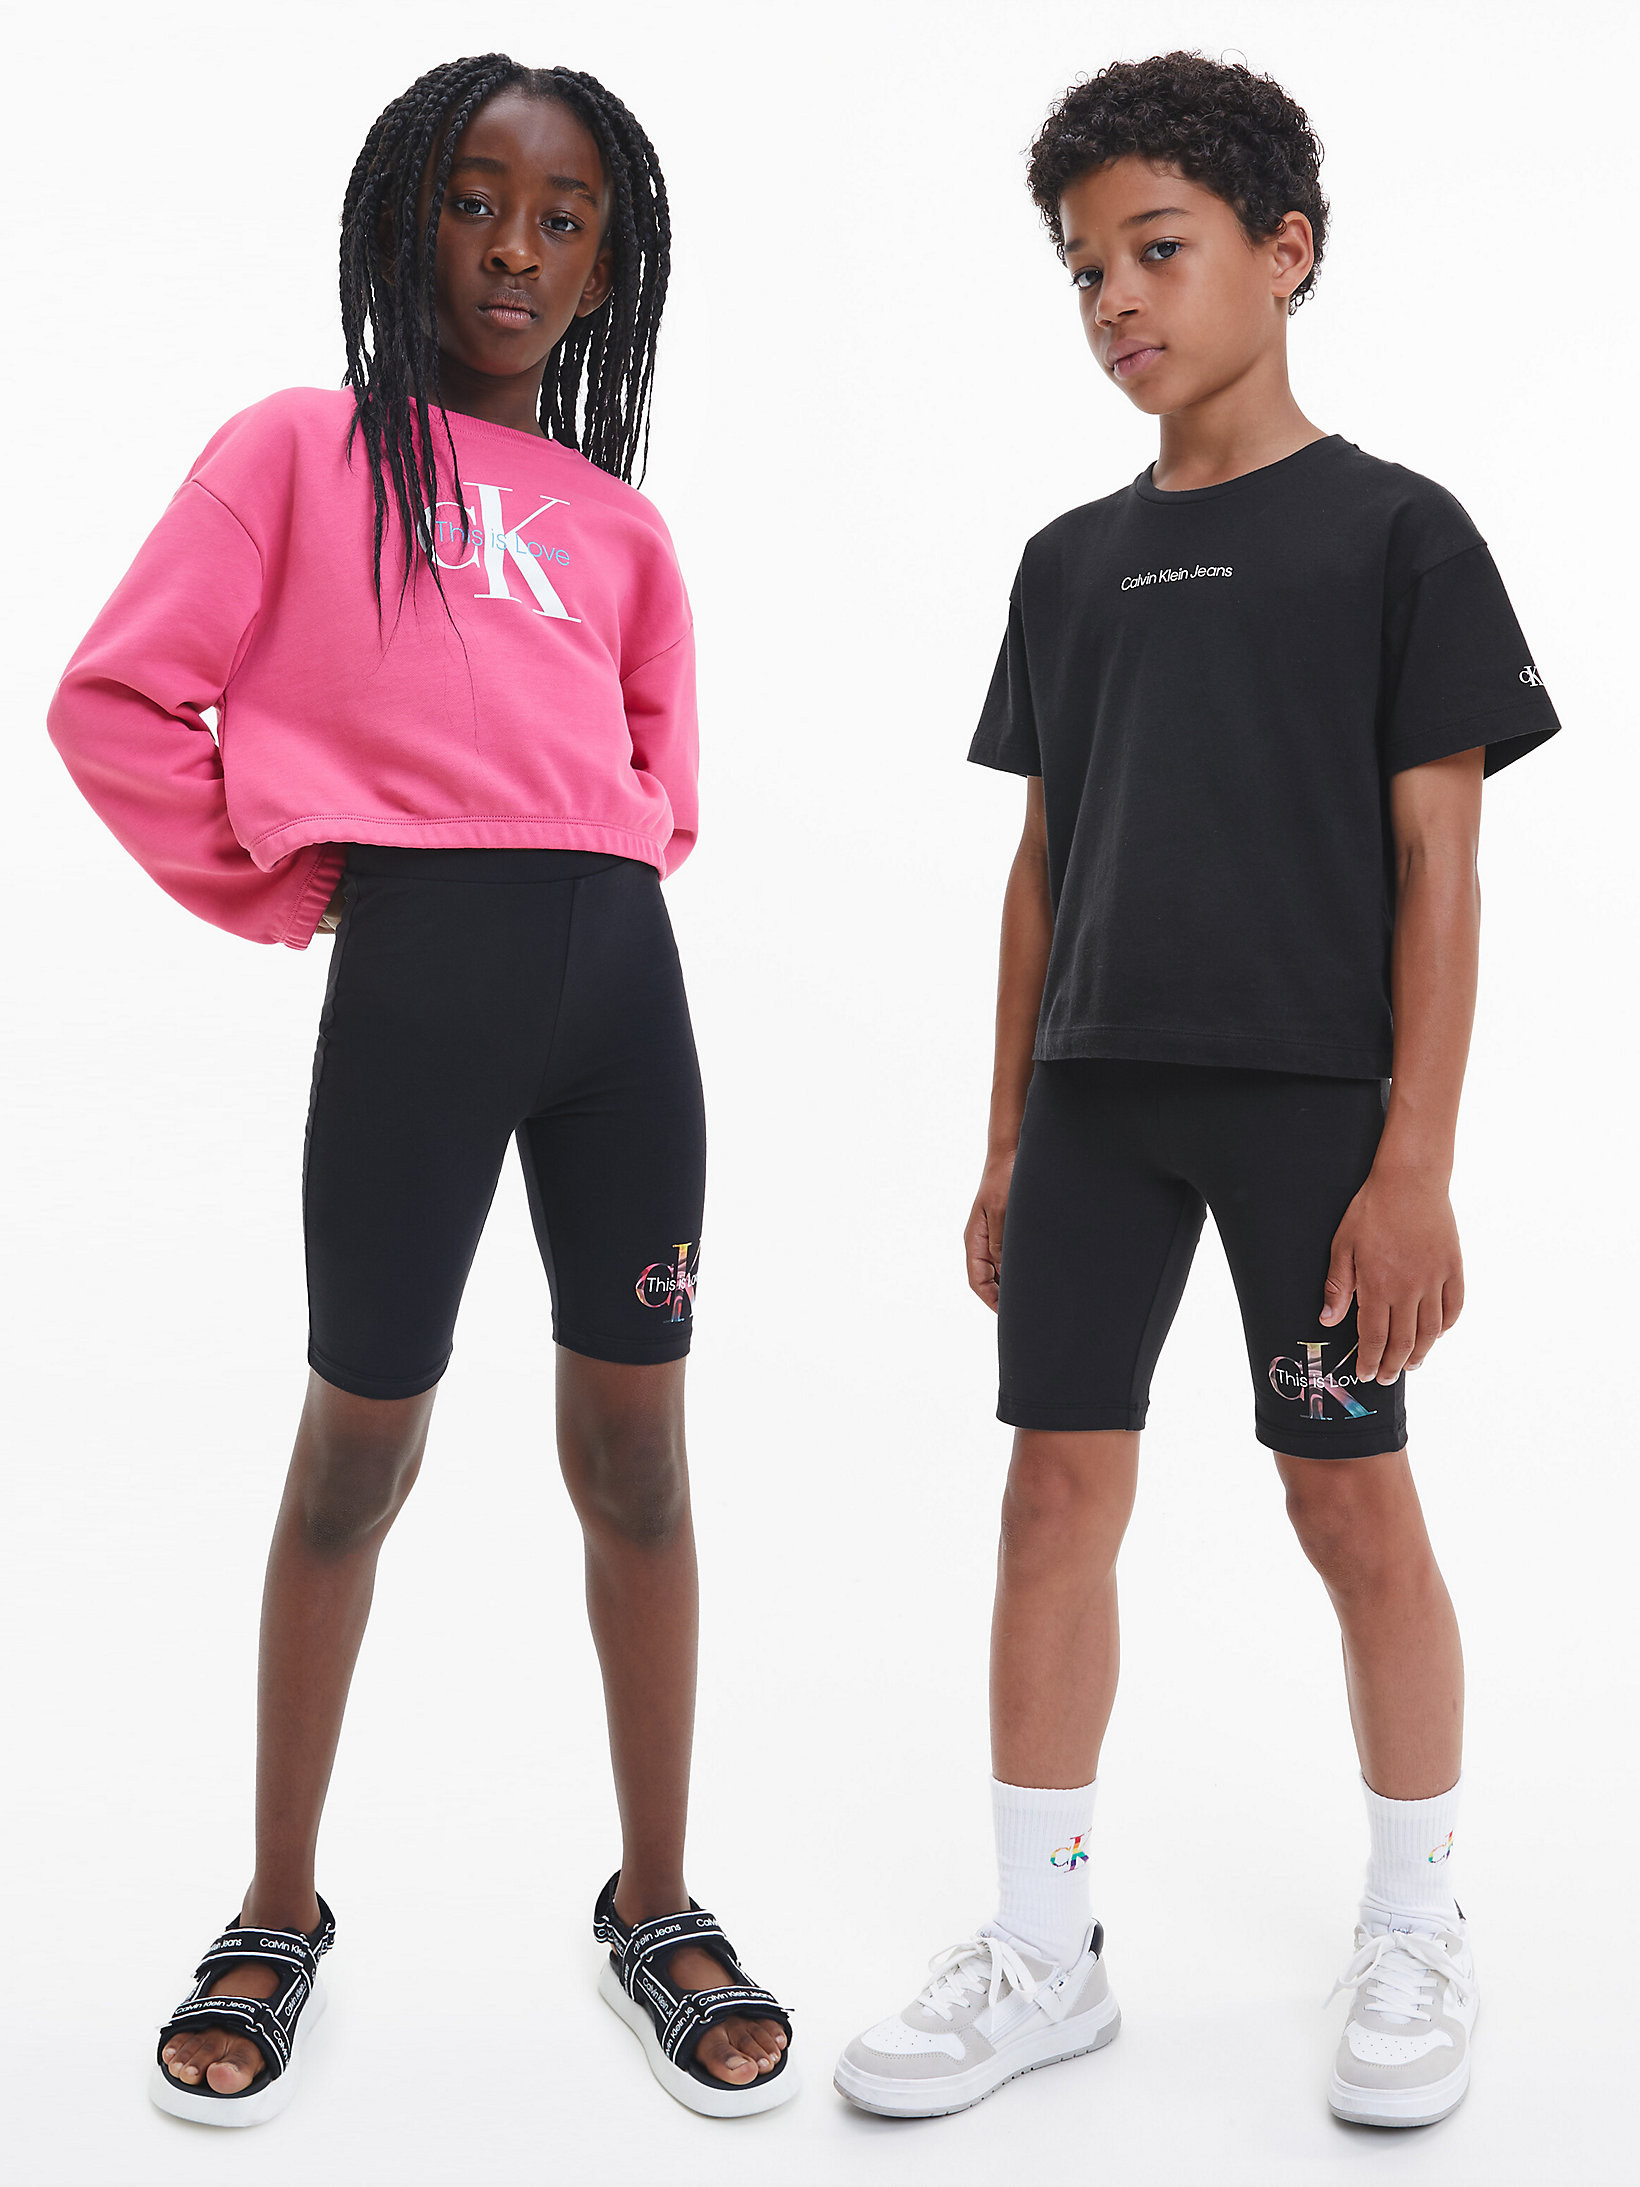 CK Black > Unisex-Radler-Shorts - Pride > undefined kids unisex - Calvin Klein